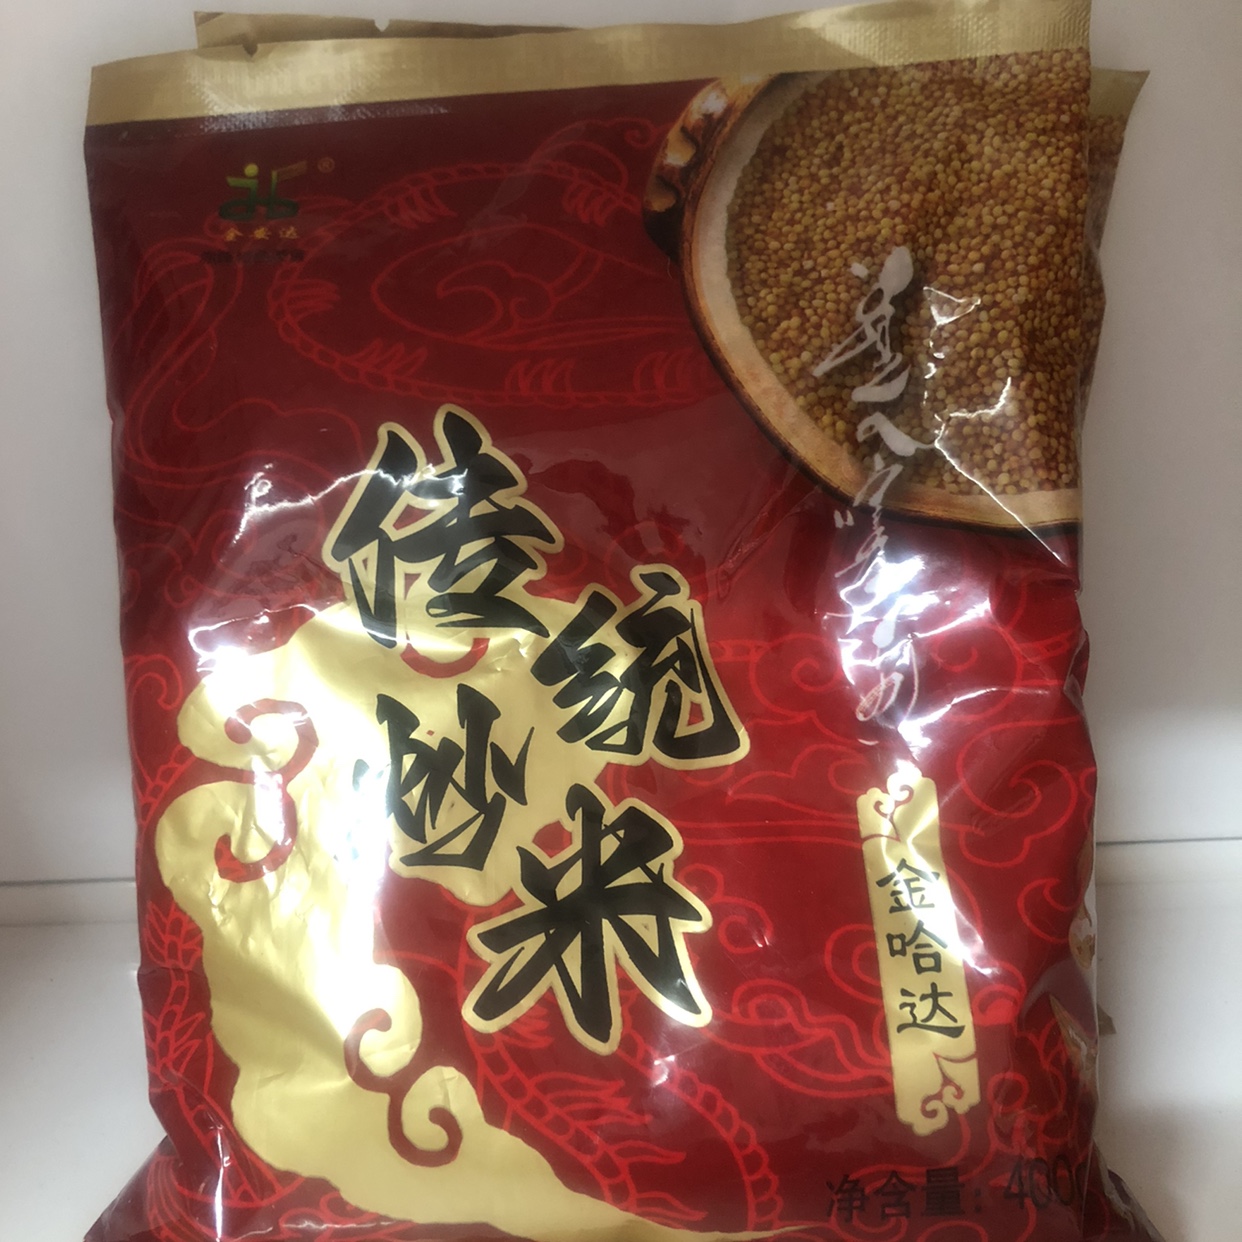 正宗内蒙古传统炒米无添加糜子米赤峰特产奶茶伴侣低脂食品400克